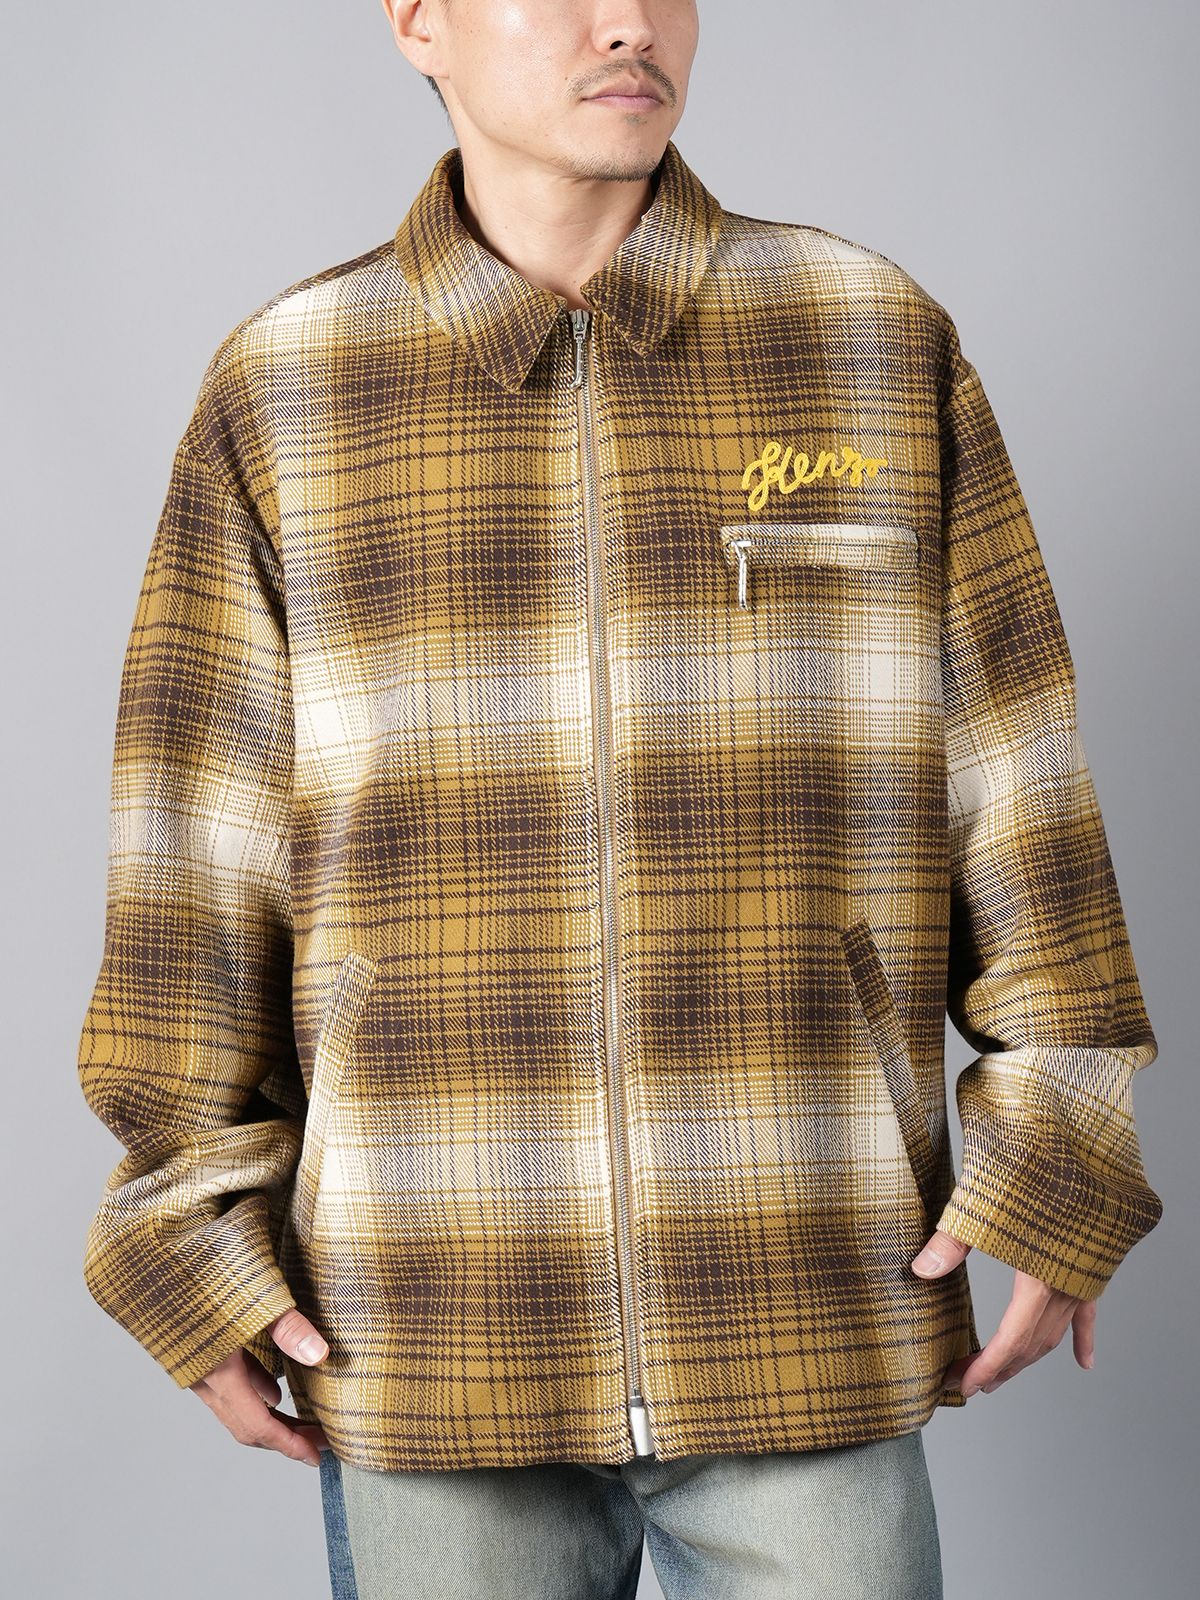 J.W.ANDERSON 刺繍ロングチェックシャツジャケット